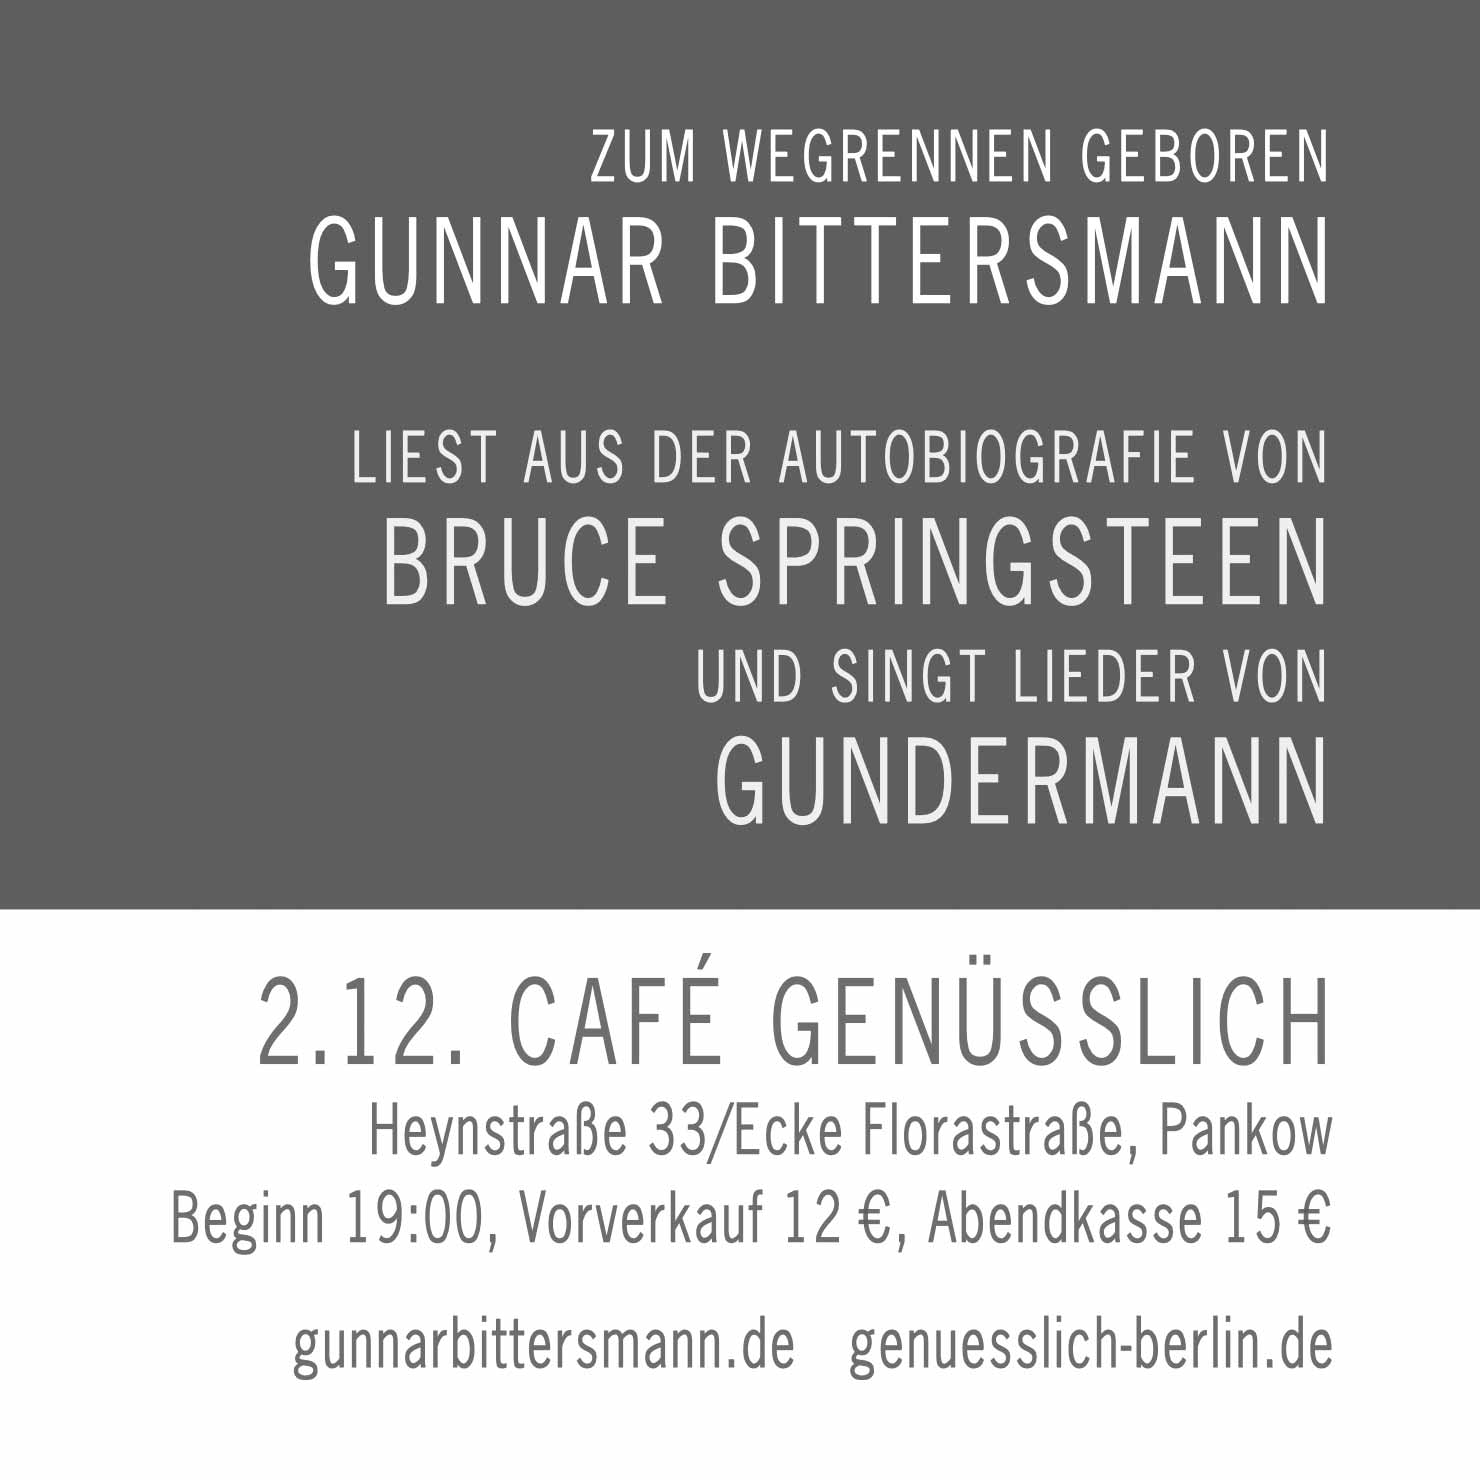 Zum Wegrennen geboren. Gunnar Bittersmannn liest aus Springsteens Autobiografie und singt Lieder von Gundermann. 2.12. Café Genüsslich, Heynstraße 33/Ecke Florastraße, Pankow. Beginn 19 Uhr, Vorverkauf 12 €, Abendkasse 15 €